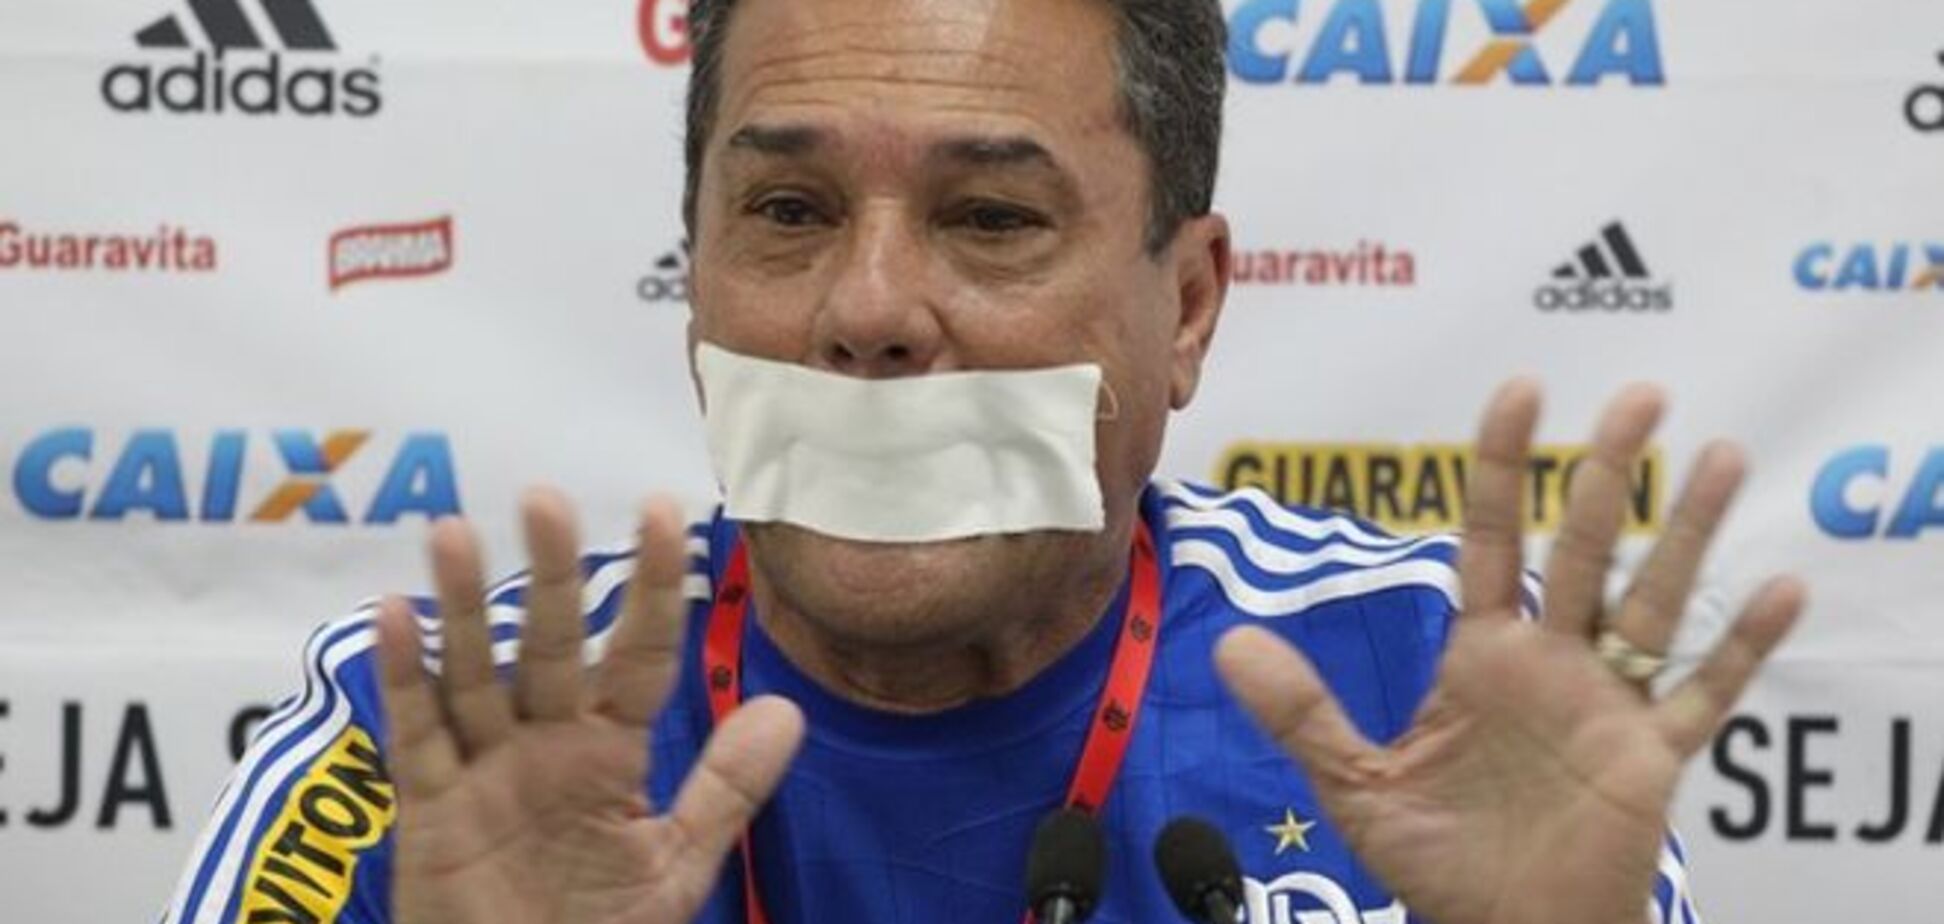 Бразильский тренер заклеил себе рот на пресс-конференции